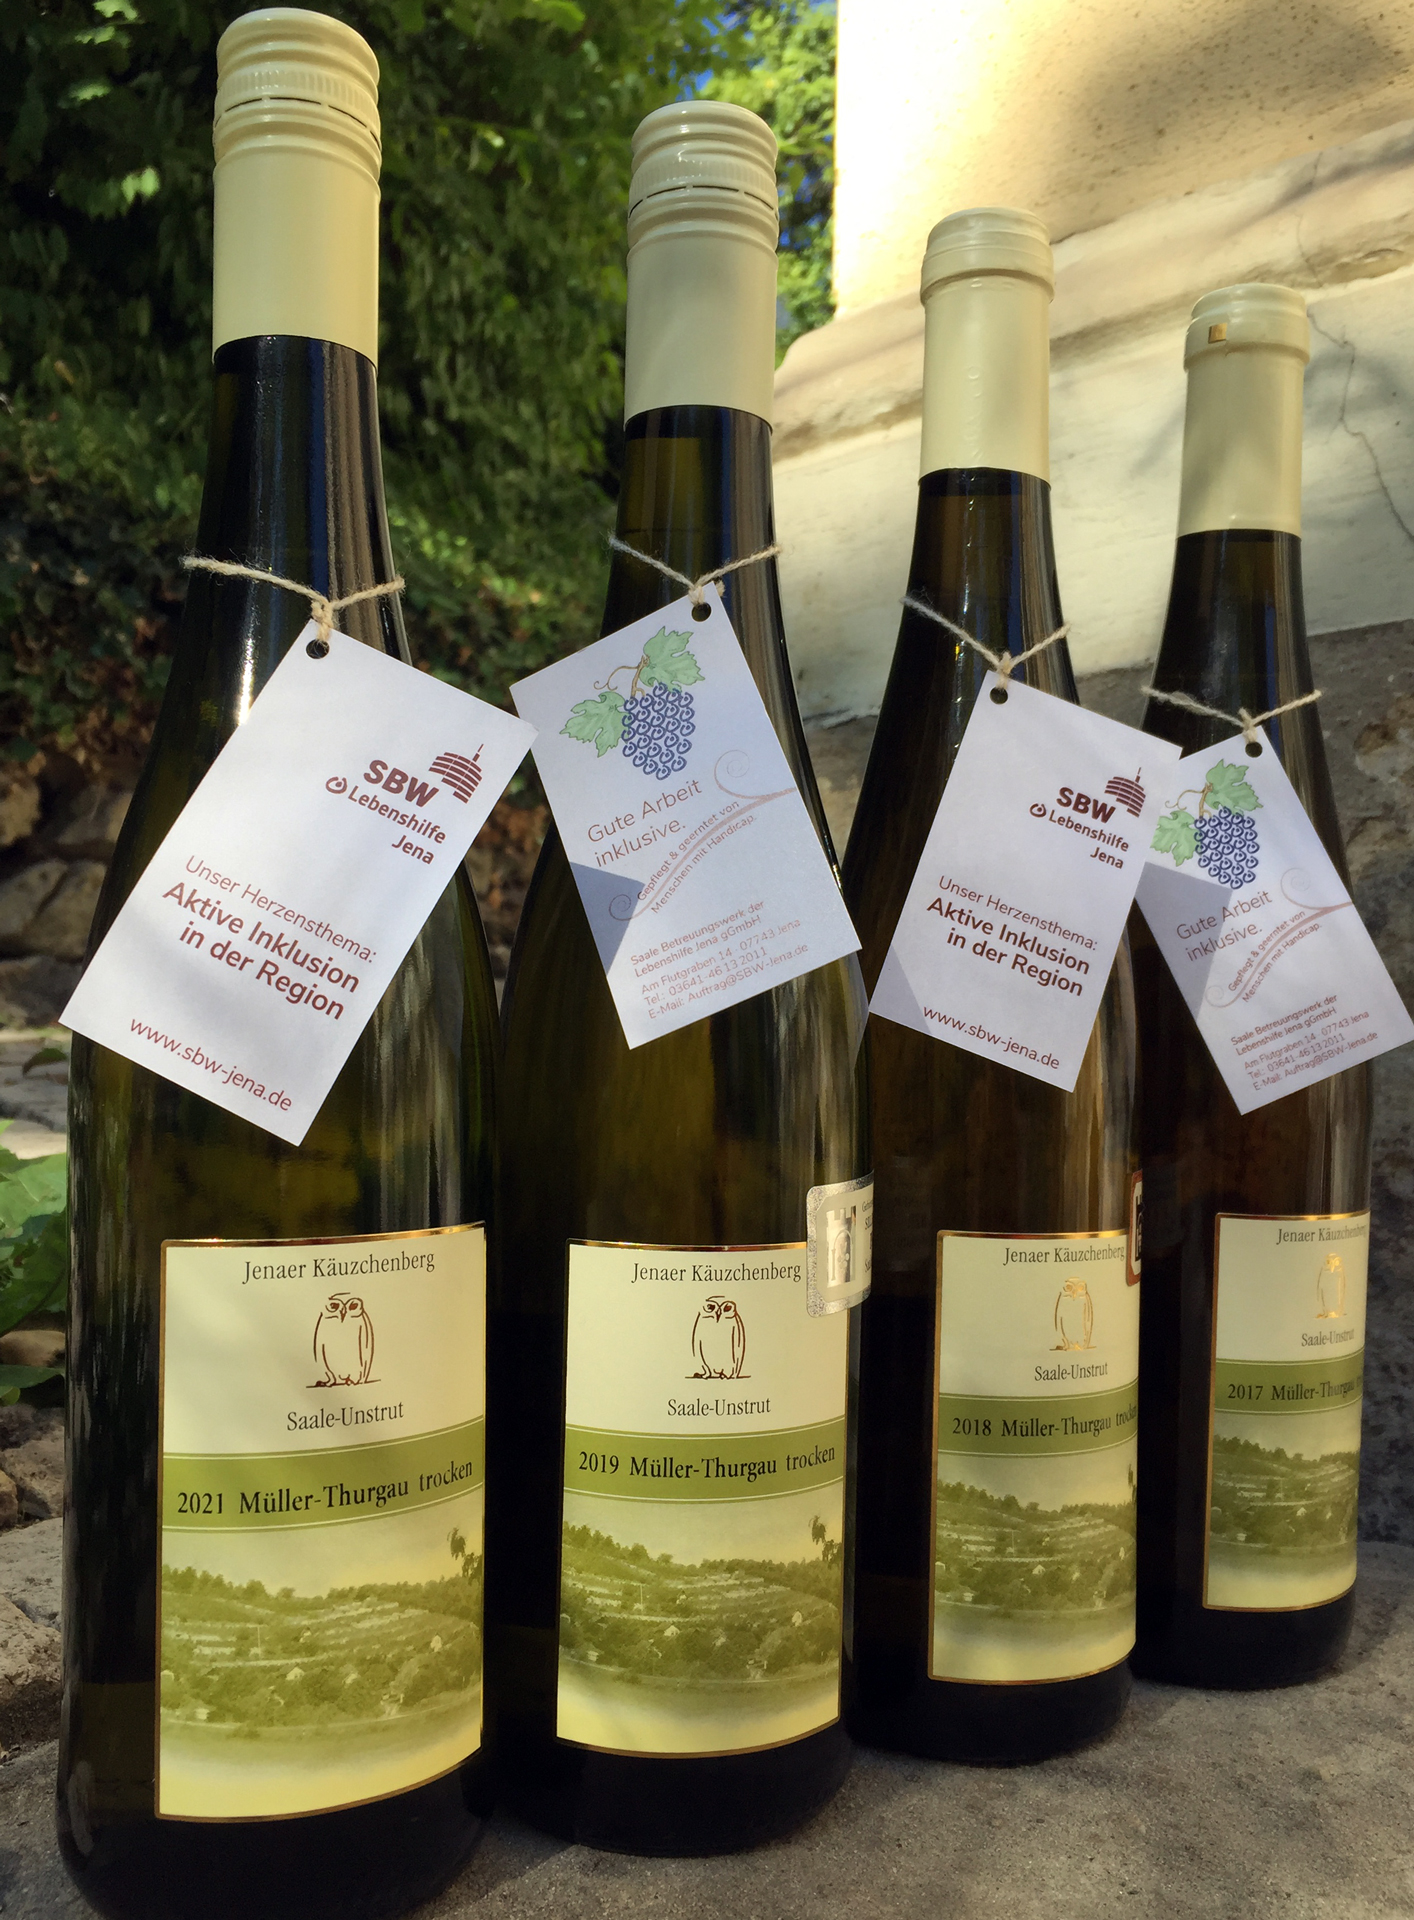 Auf dem Bild sind vier Jahrgänge des Weißweins Müller-Thurgau mit dem Etikett vom Jenaer Käuzchenberg in Flaschen zu sehen.